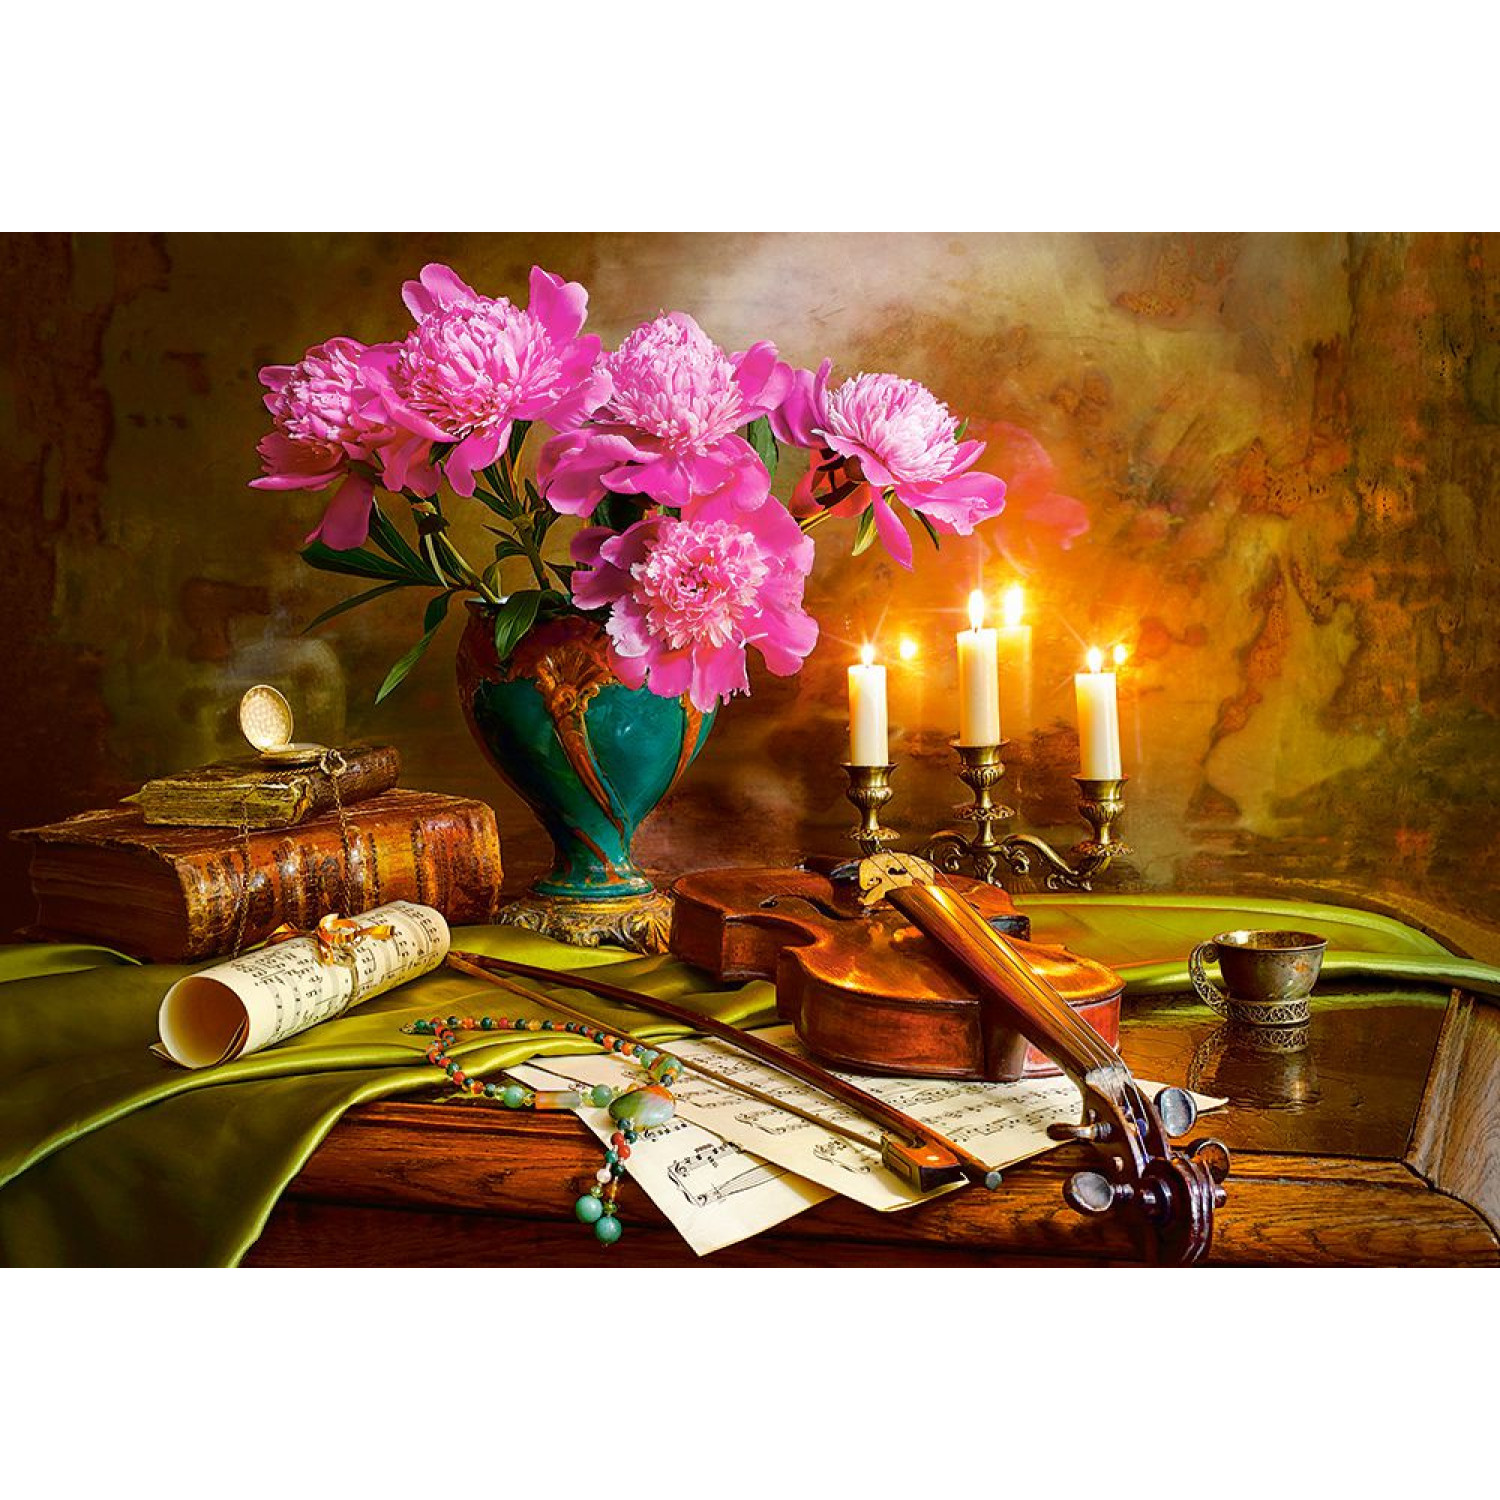 Пъзел Castorland Цигулка и цветя, 1500 елемента, C-151530